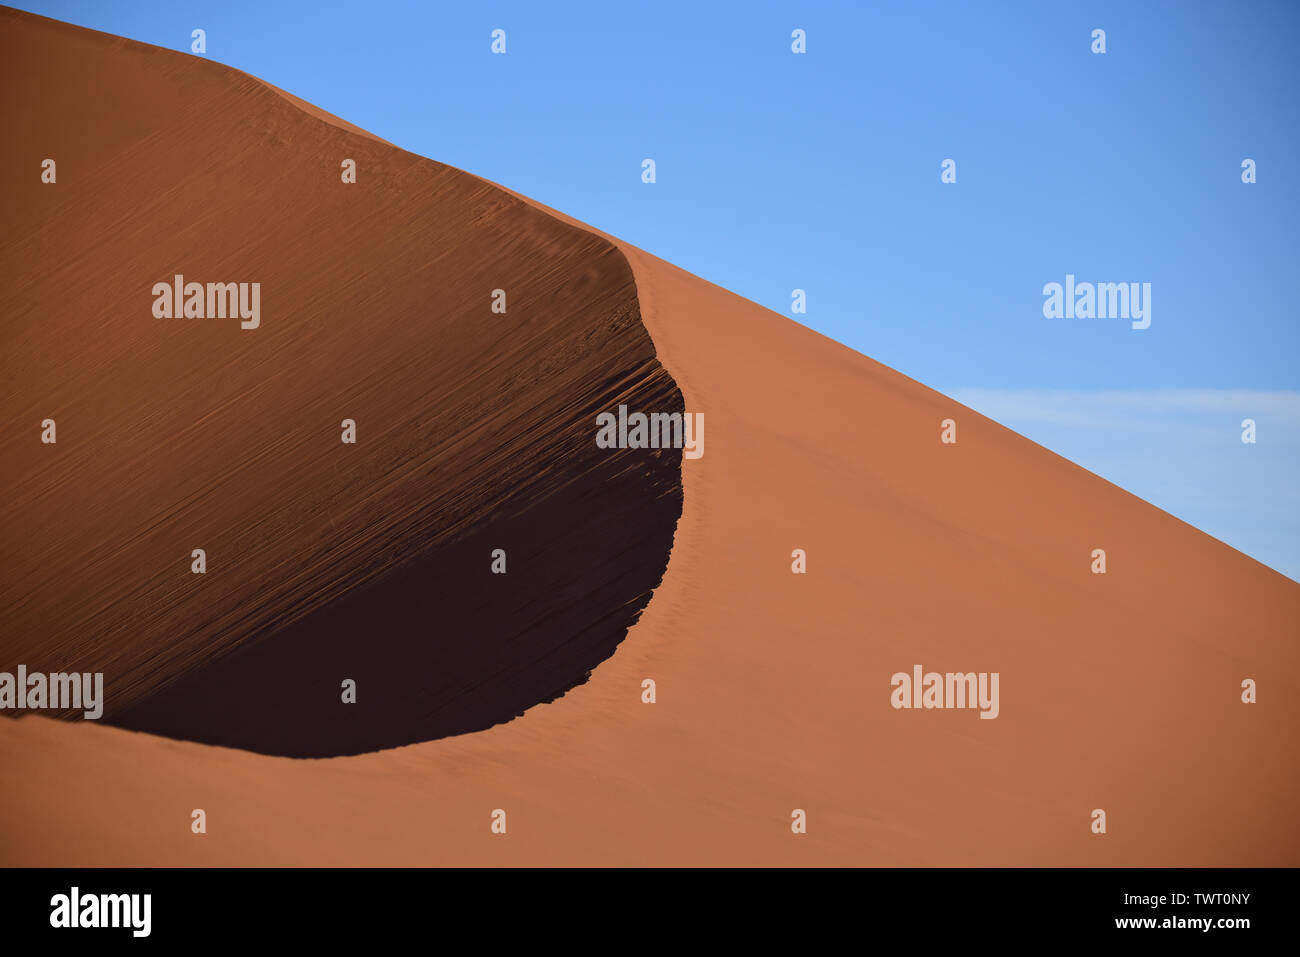 Detail of Big Daddy dune at Namib Desert, Sossusvlei. Sand dunes at sunrise, Namibia, Africa Stock Photo